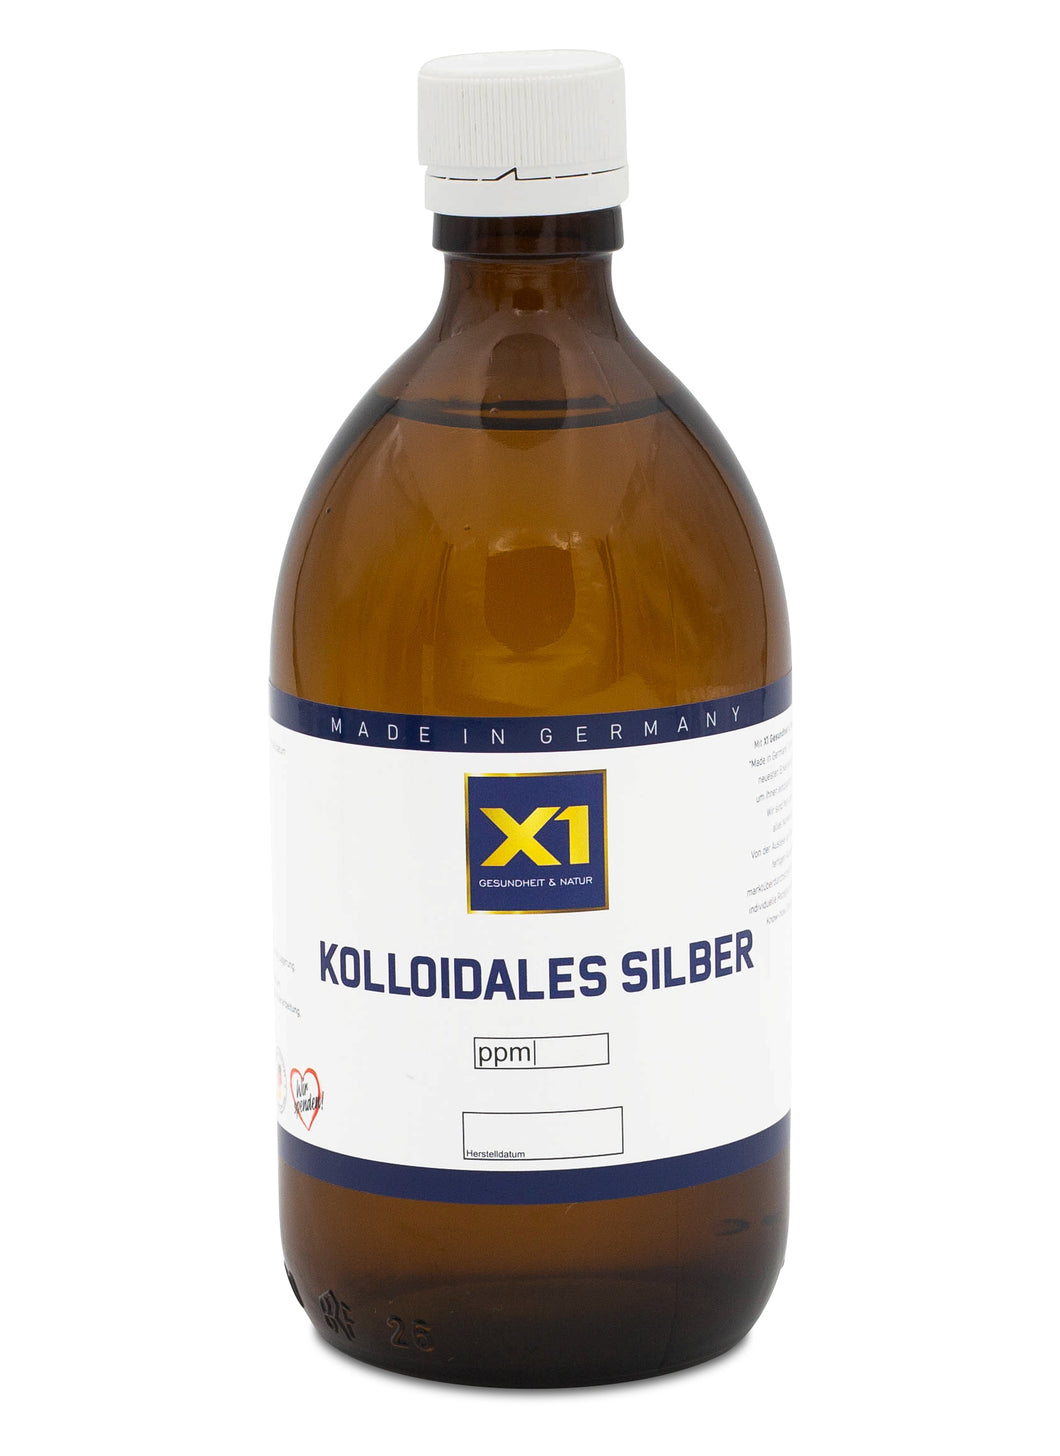 Kolloidales Silber (Silberwasser) Eigene Herstellung   -500ml-